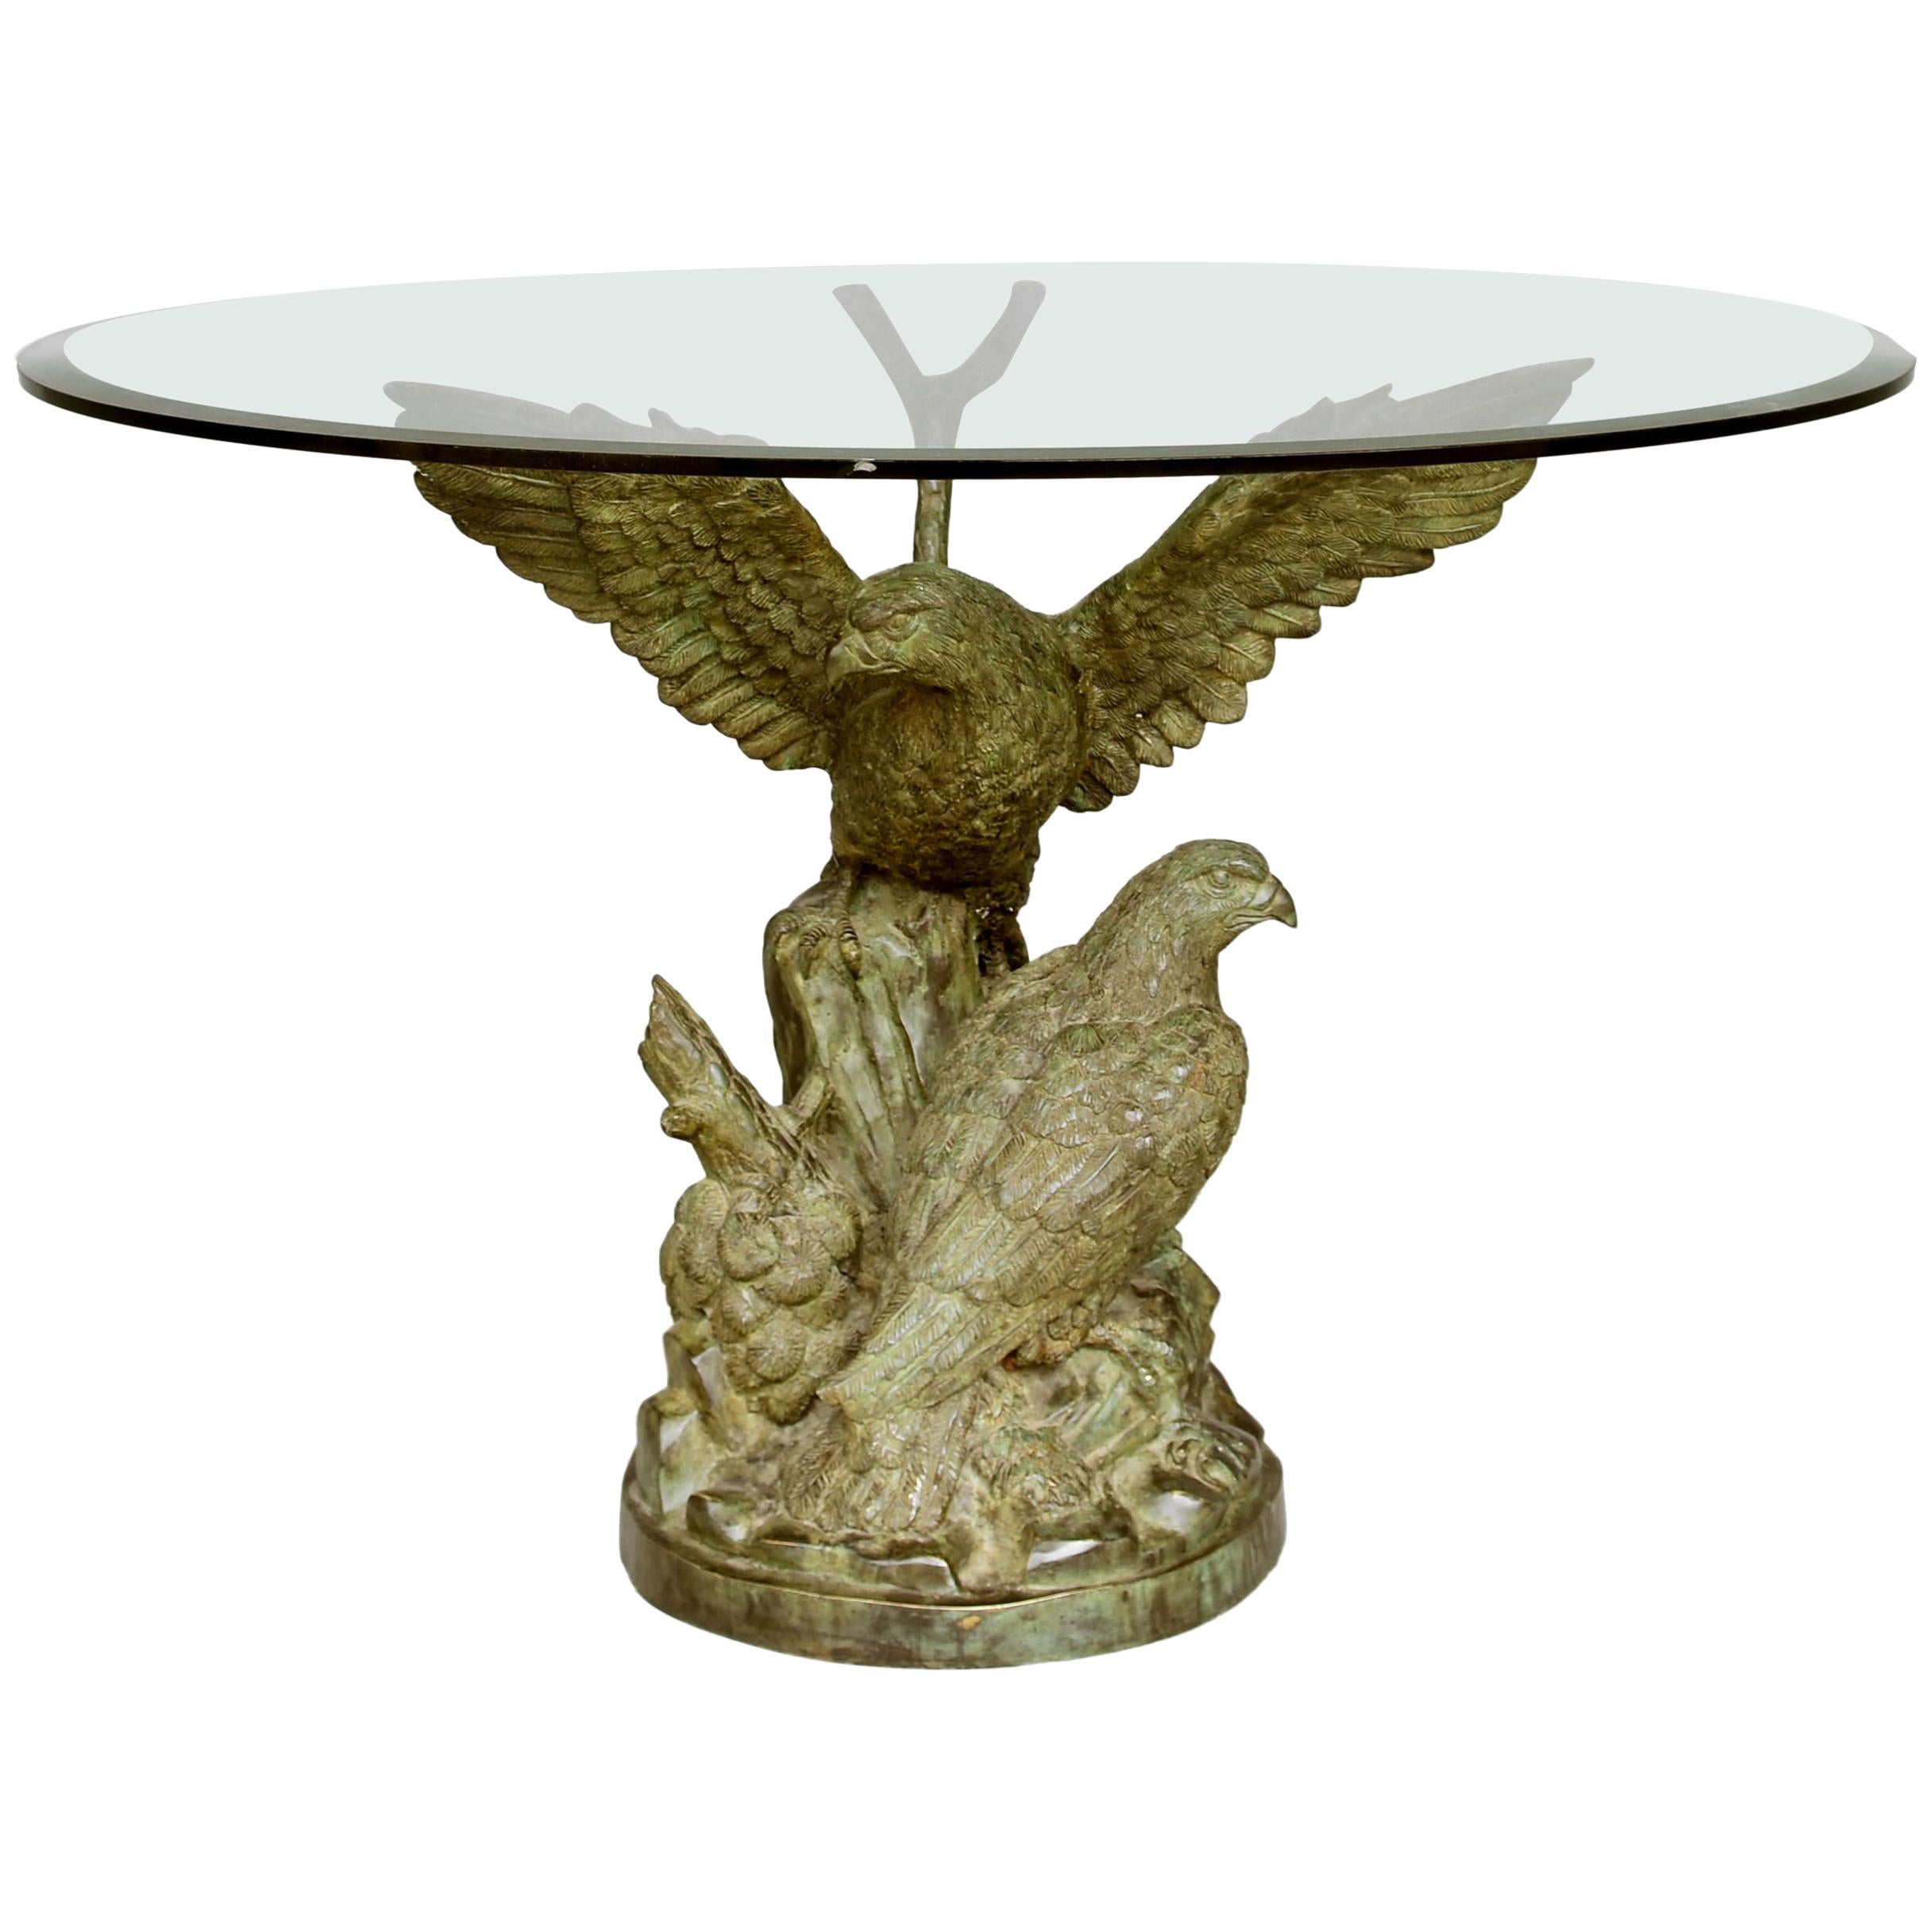 Table du milieu avec aigles en bronze à patine verte